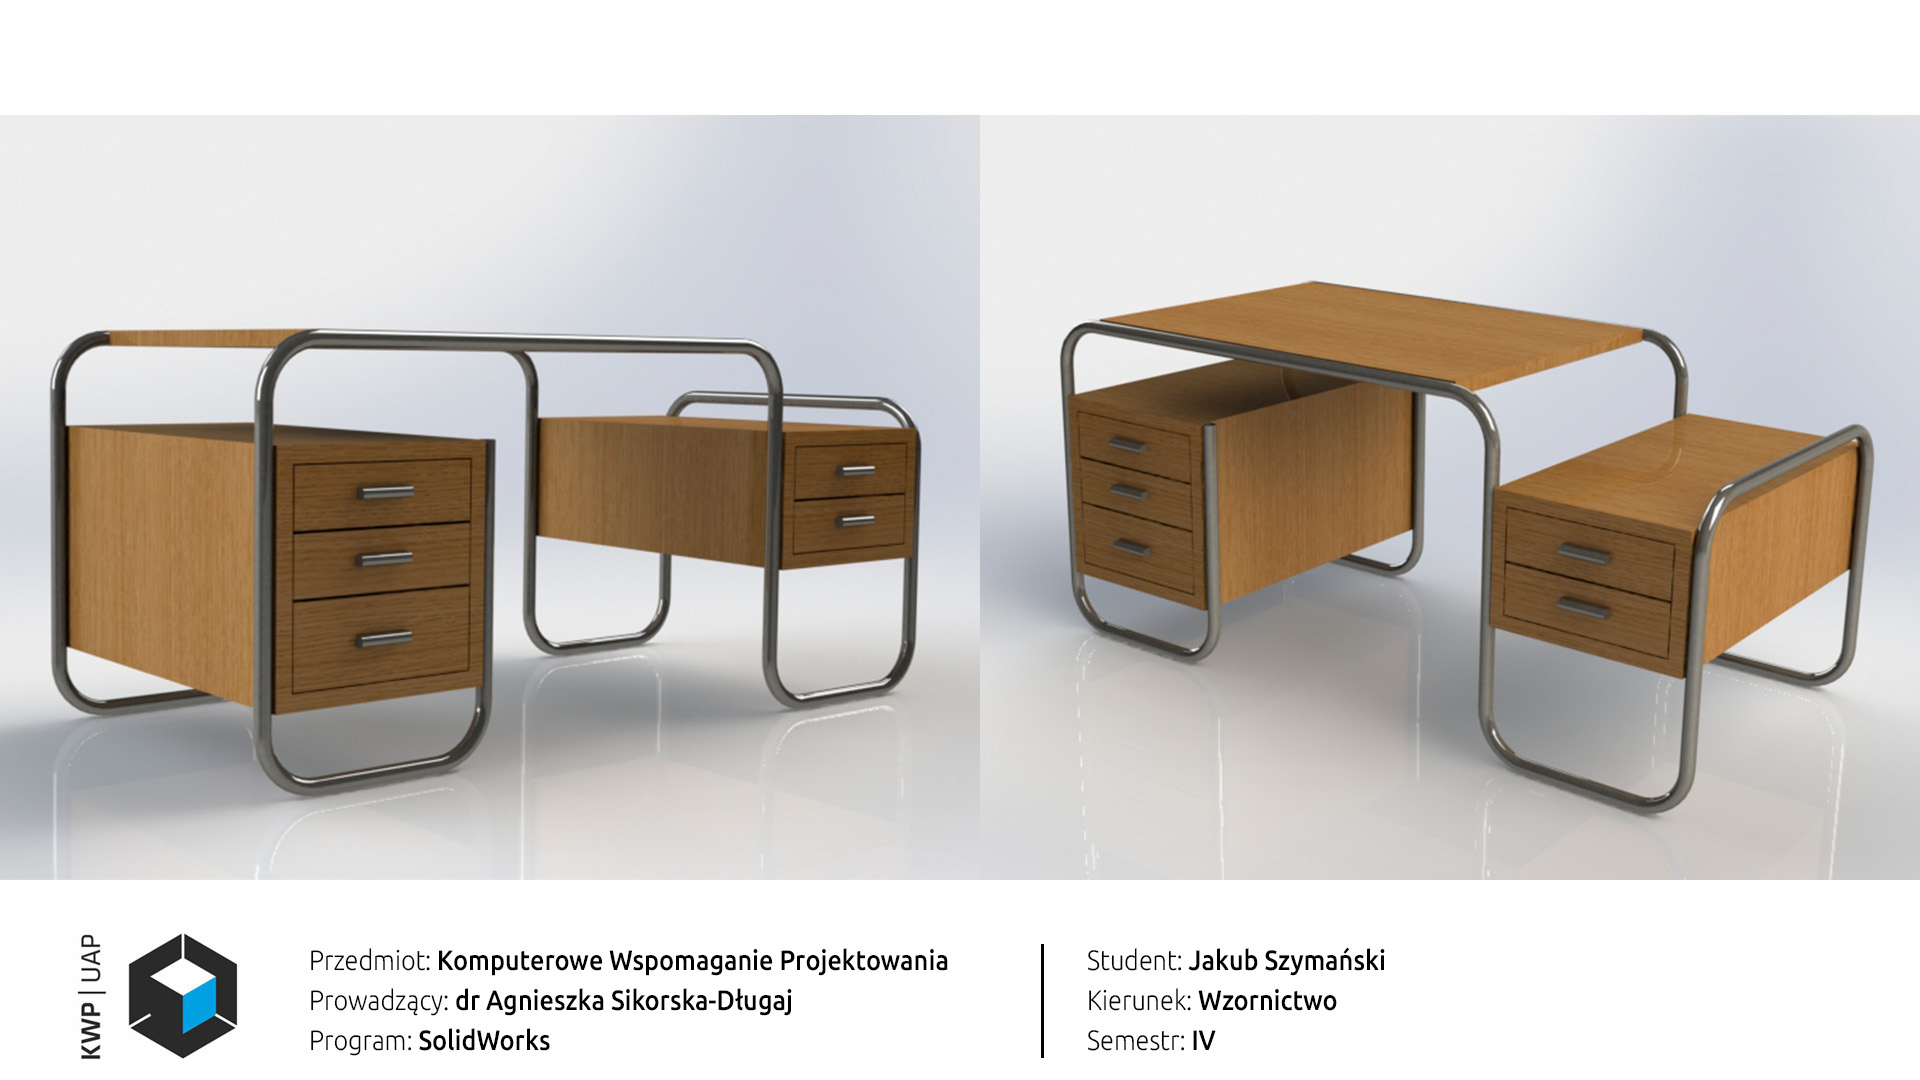 Rendery z programu SolidWorks. Model biurka firmy Thonet z metalowych rurek i drewnianego blatu oraz dwóch korpusów z szufladami. Tło biało-szary gradient.